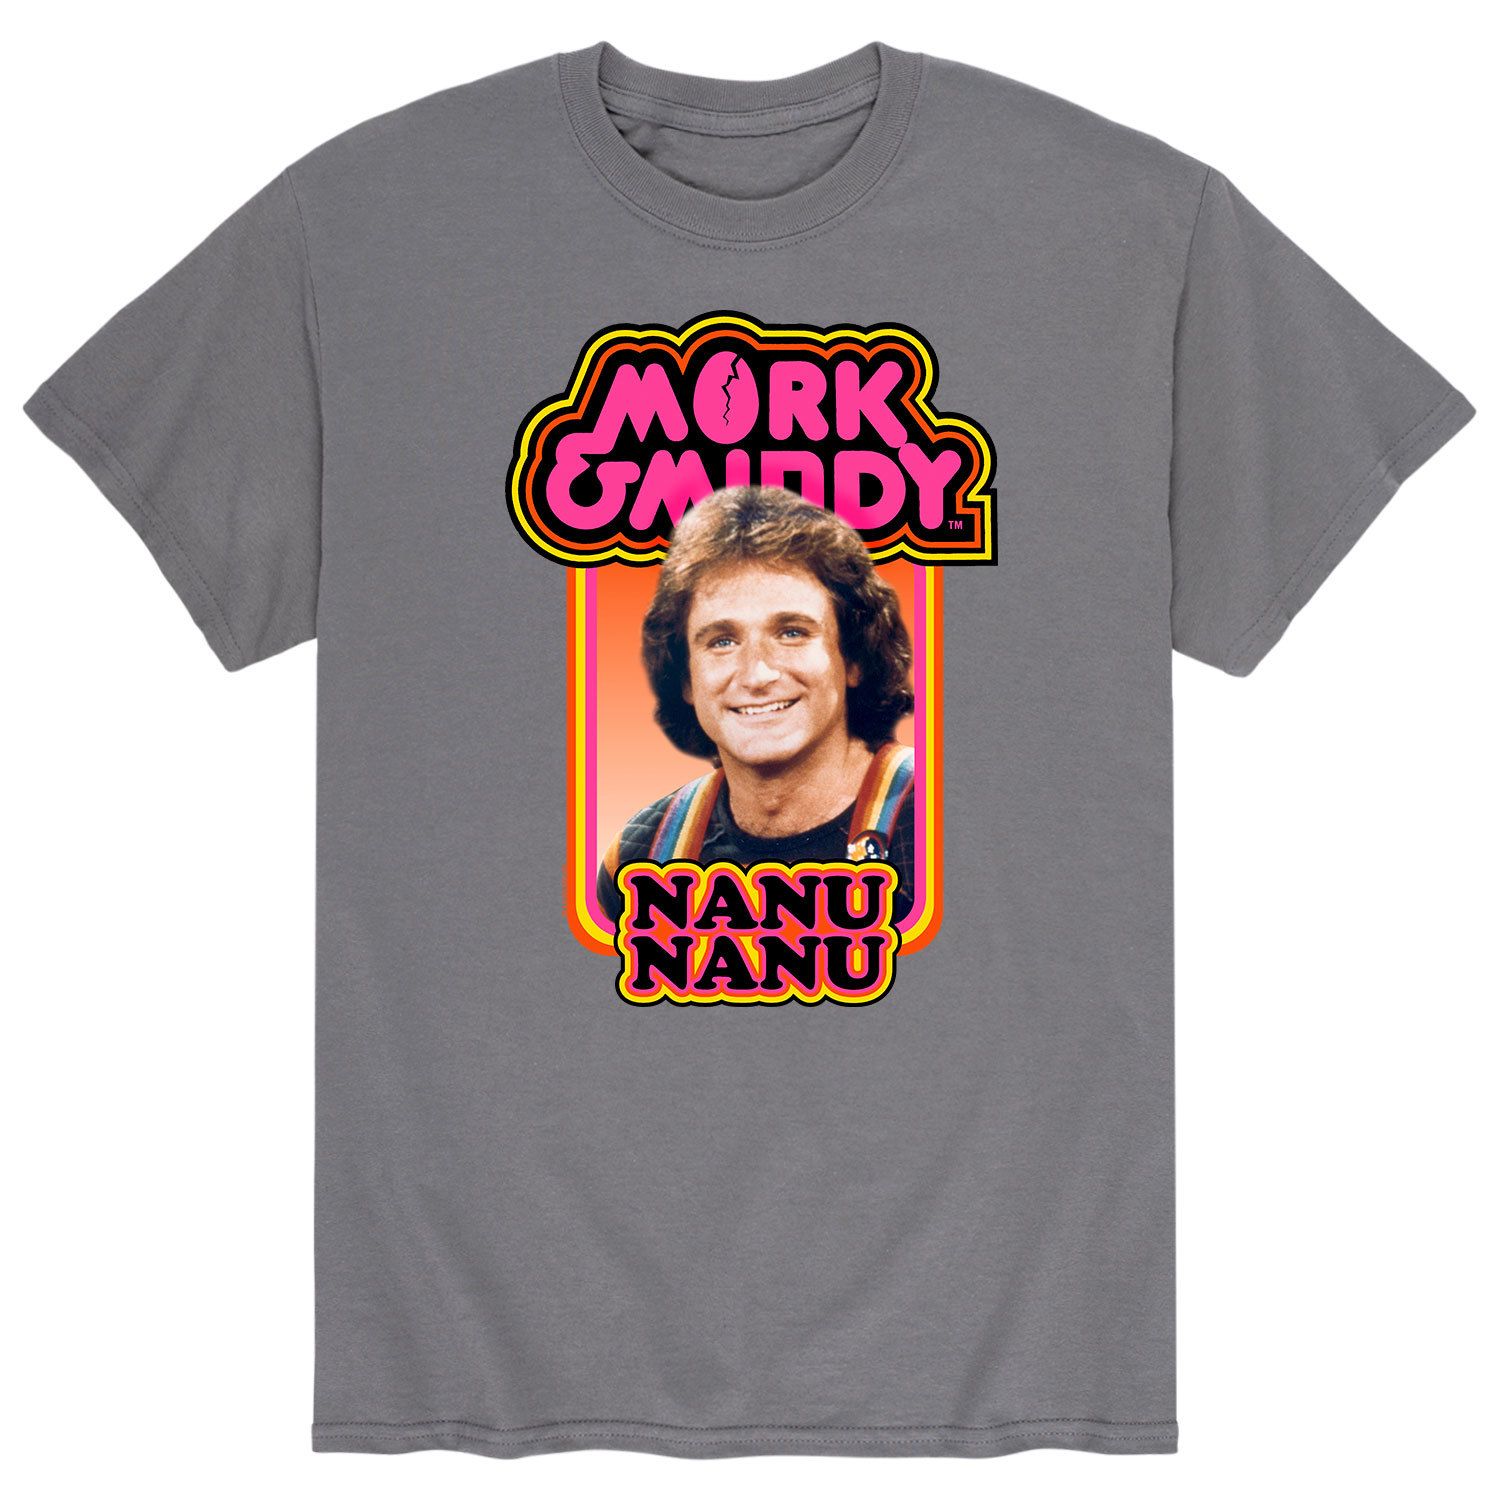 Мужская футболка Mork & Mindy Nanu Nanu Licensed Character